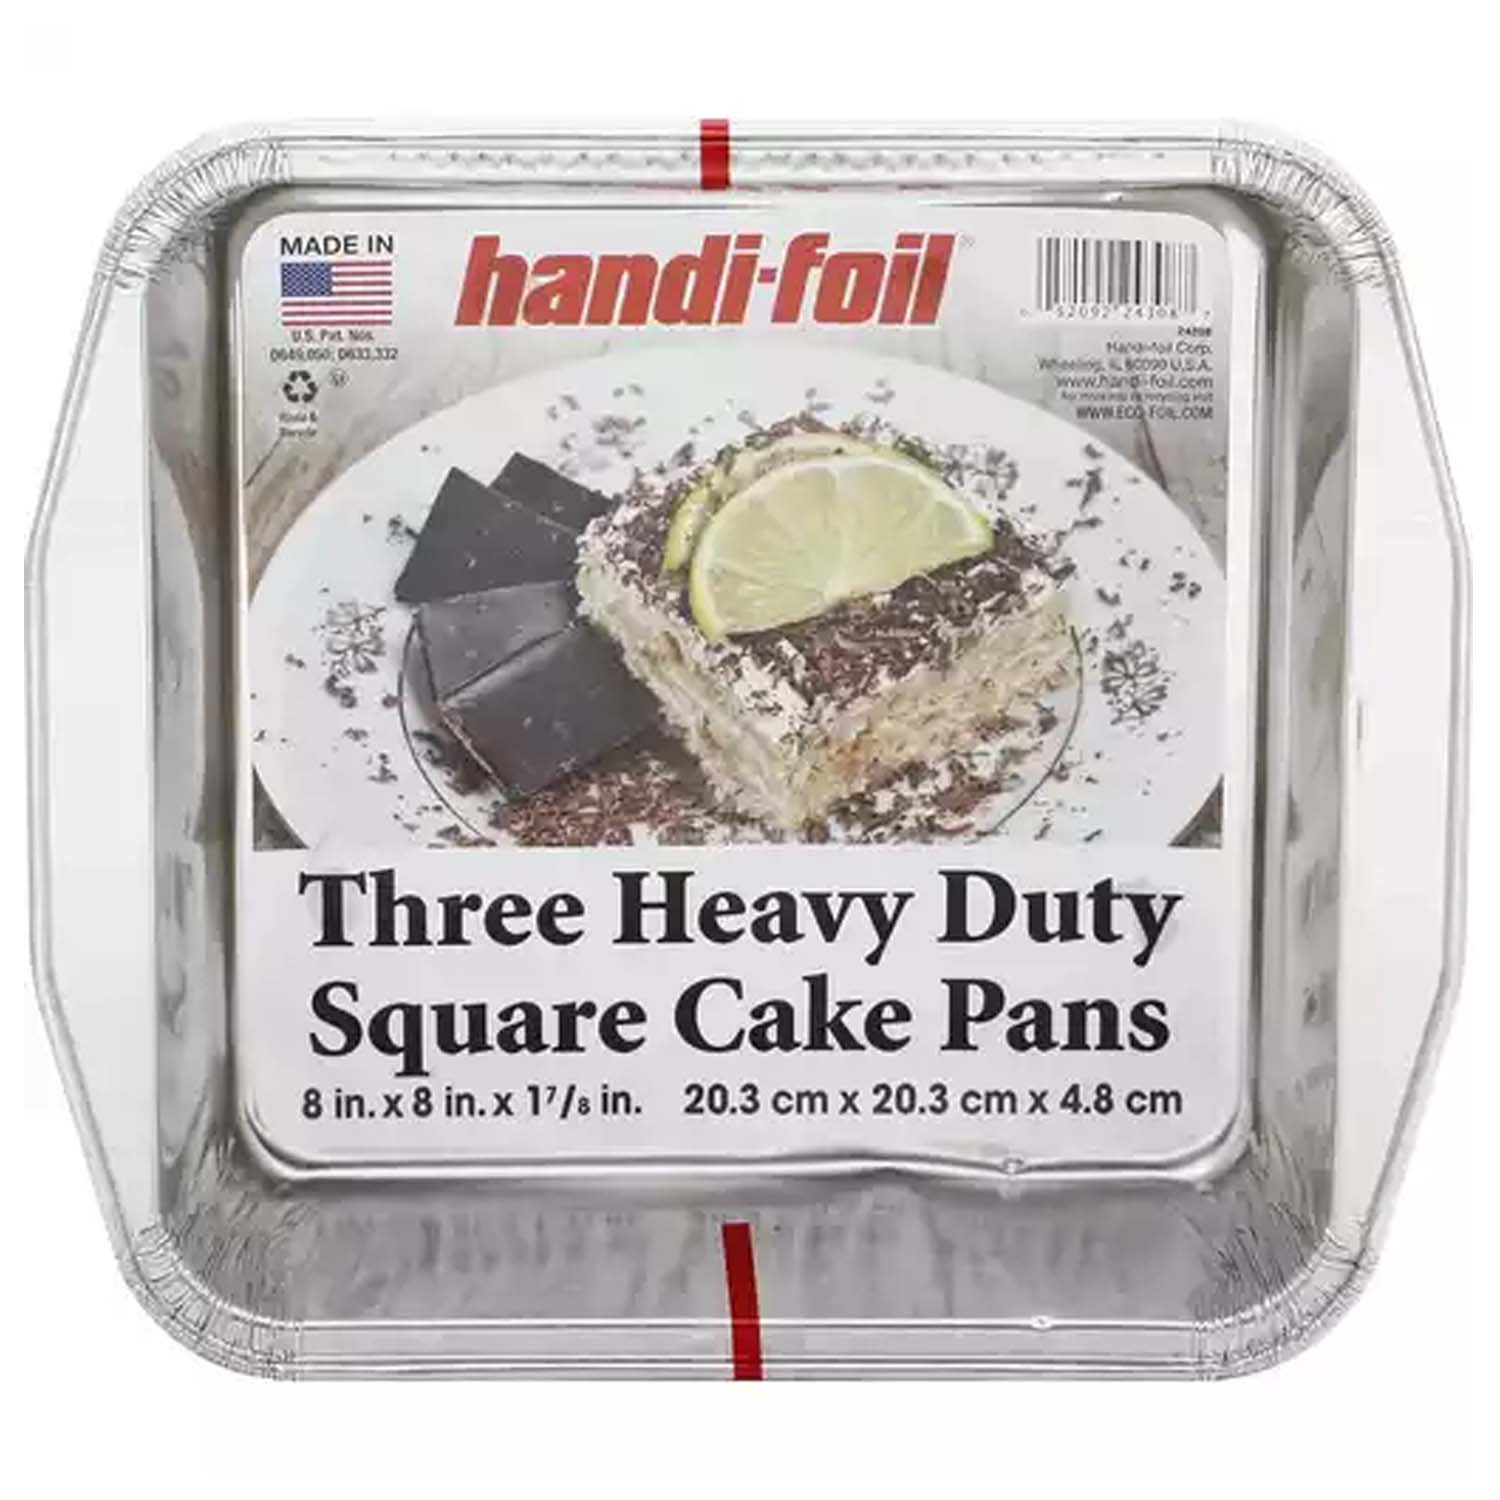 Jiffy Foil Eco-Foil Cook-n-Carry Aluminum 9 x 13 Cake Pans